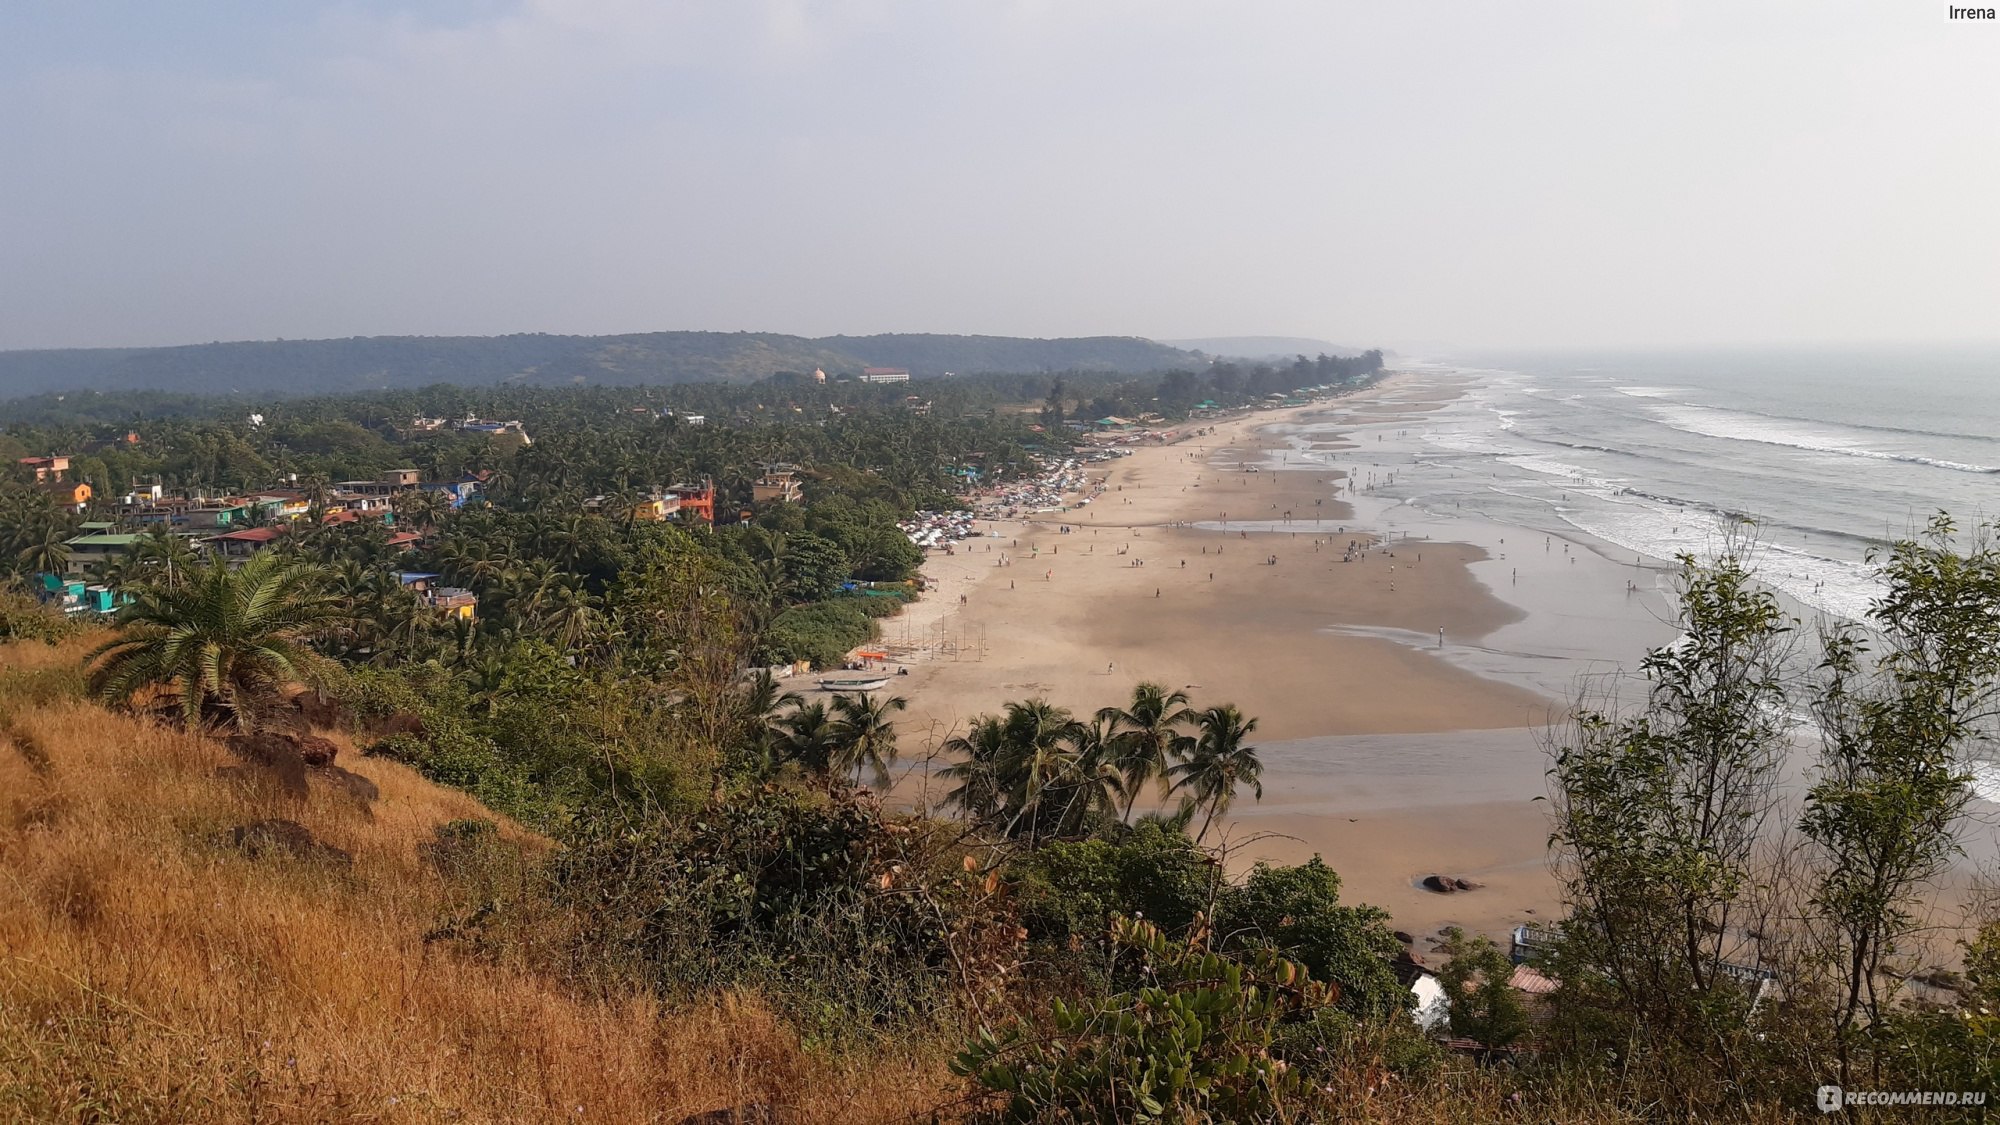 Индия, Гоа, пляж Арамболь - «Что купить, где вкусно и недорого поесть, что посмотреть самостоятельно без байка.»